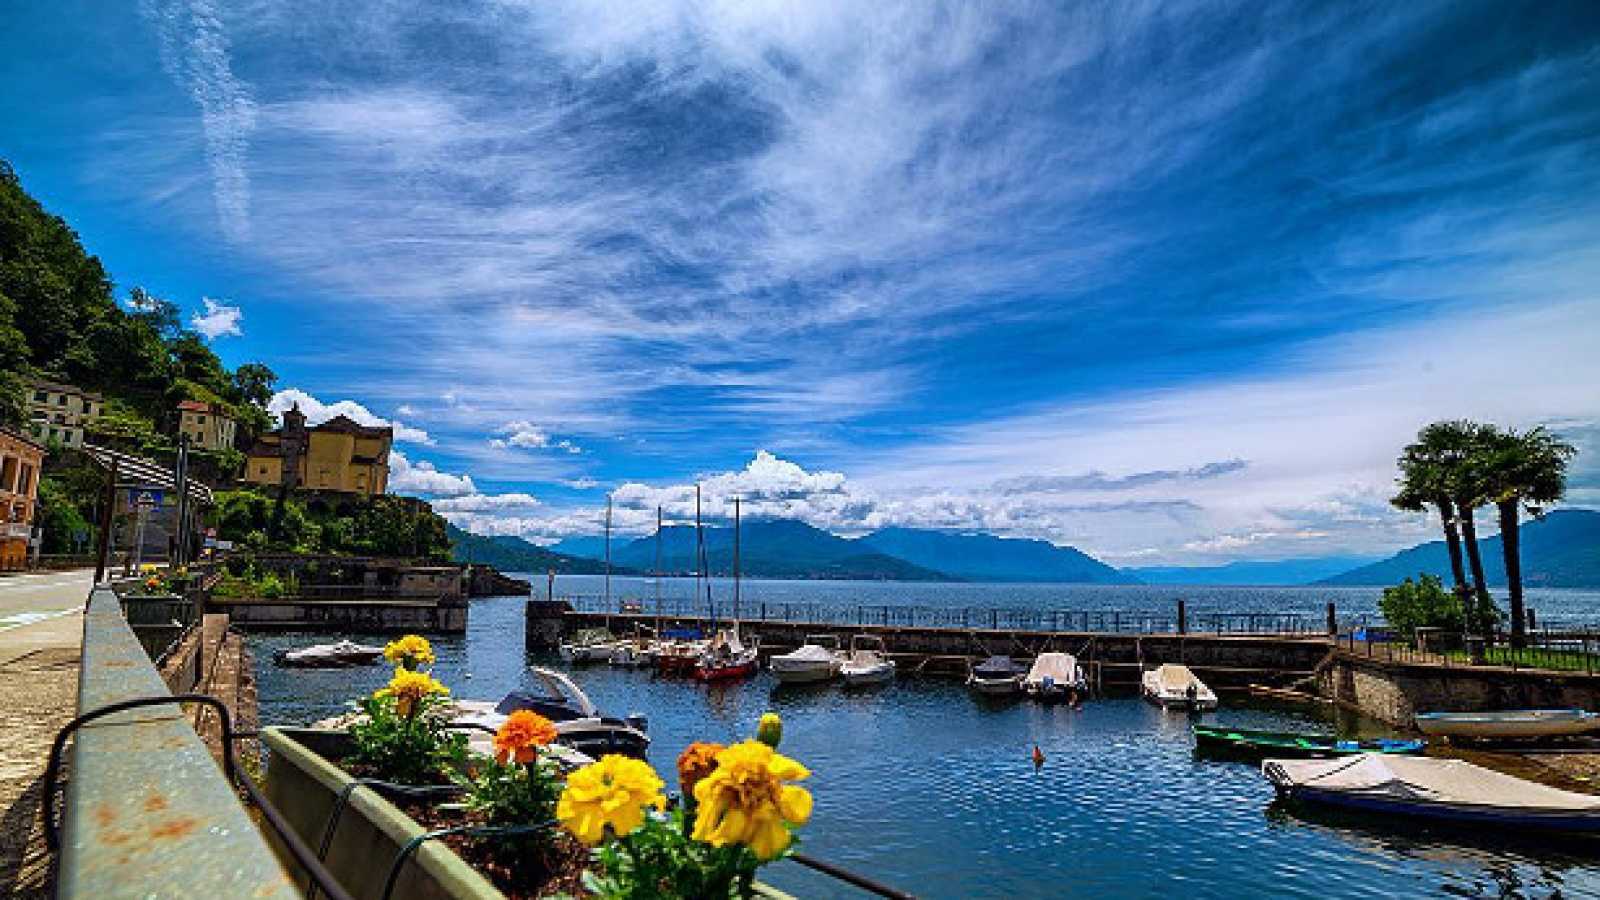 Discover the Lago Maggiore, Tour Around Lago Maggiore, Arona, Italy